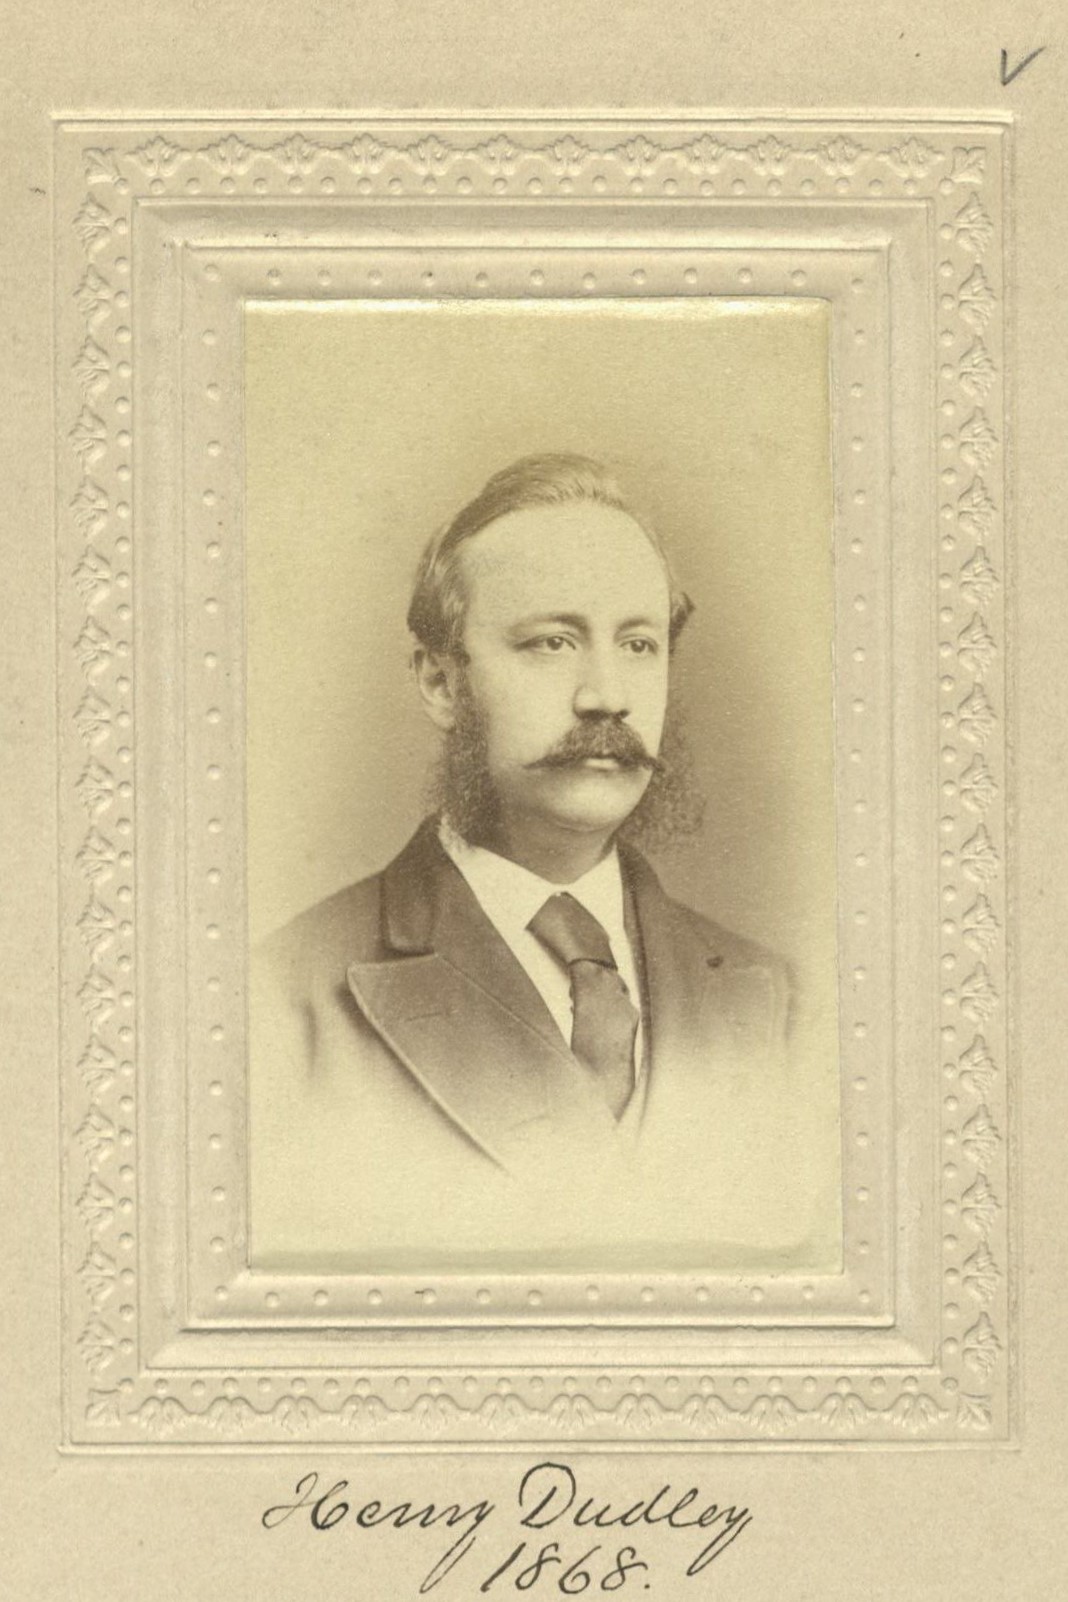 Member portrait of Henry Dudley